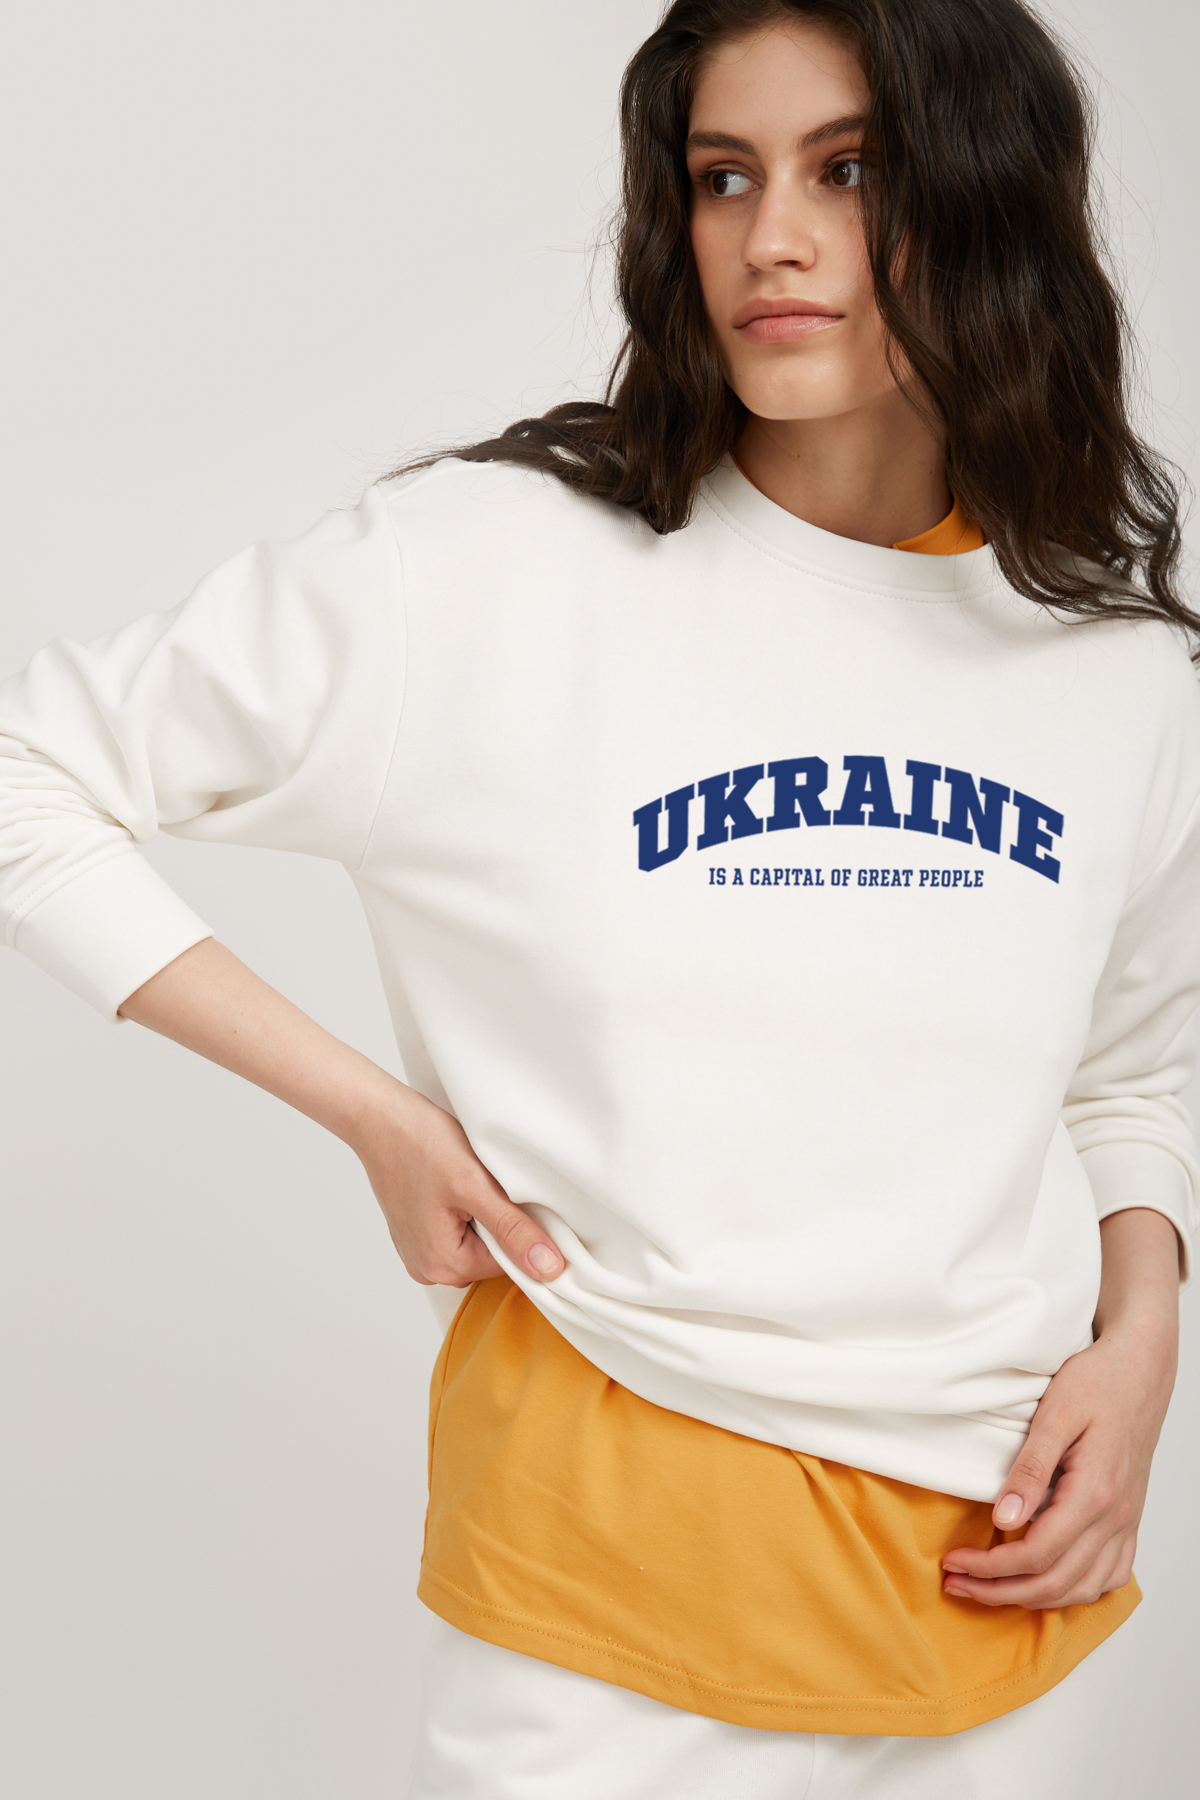 Молочный трикотажный свитшот с надписью "Ukraine", фото 3